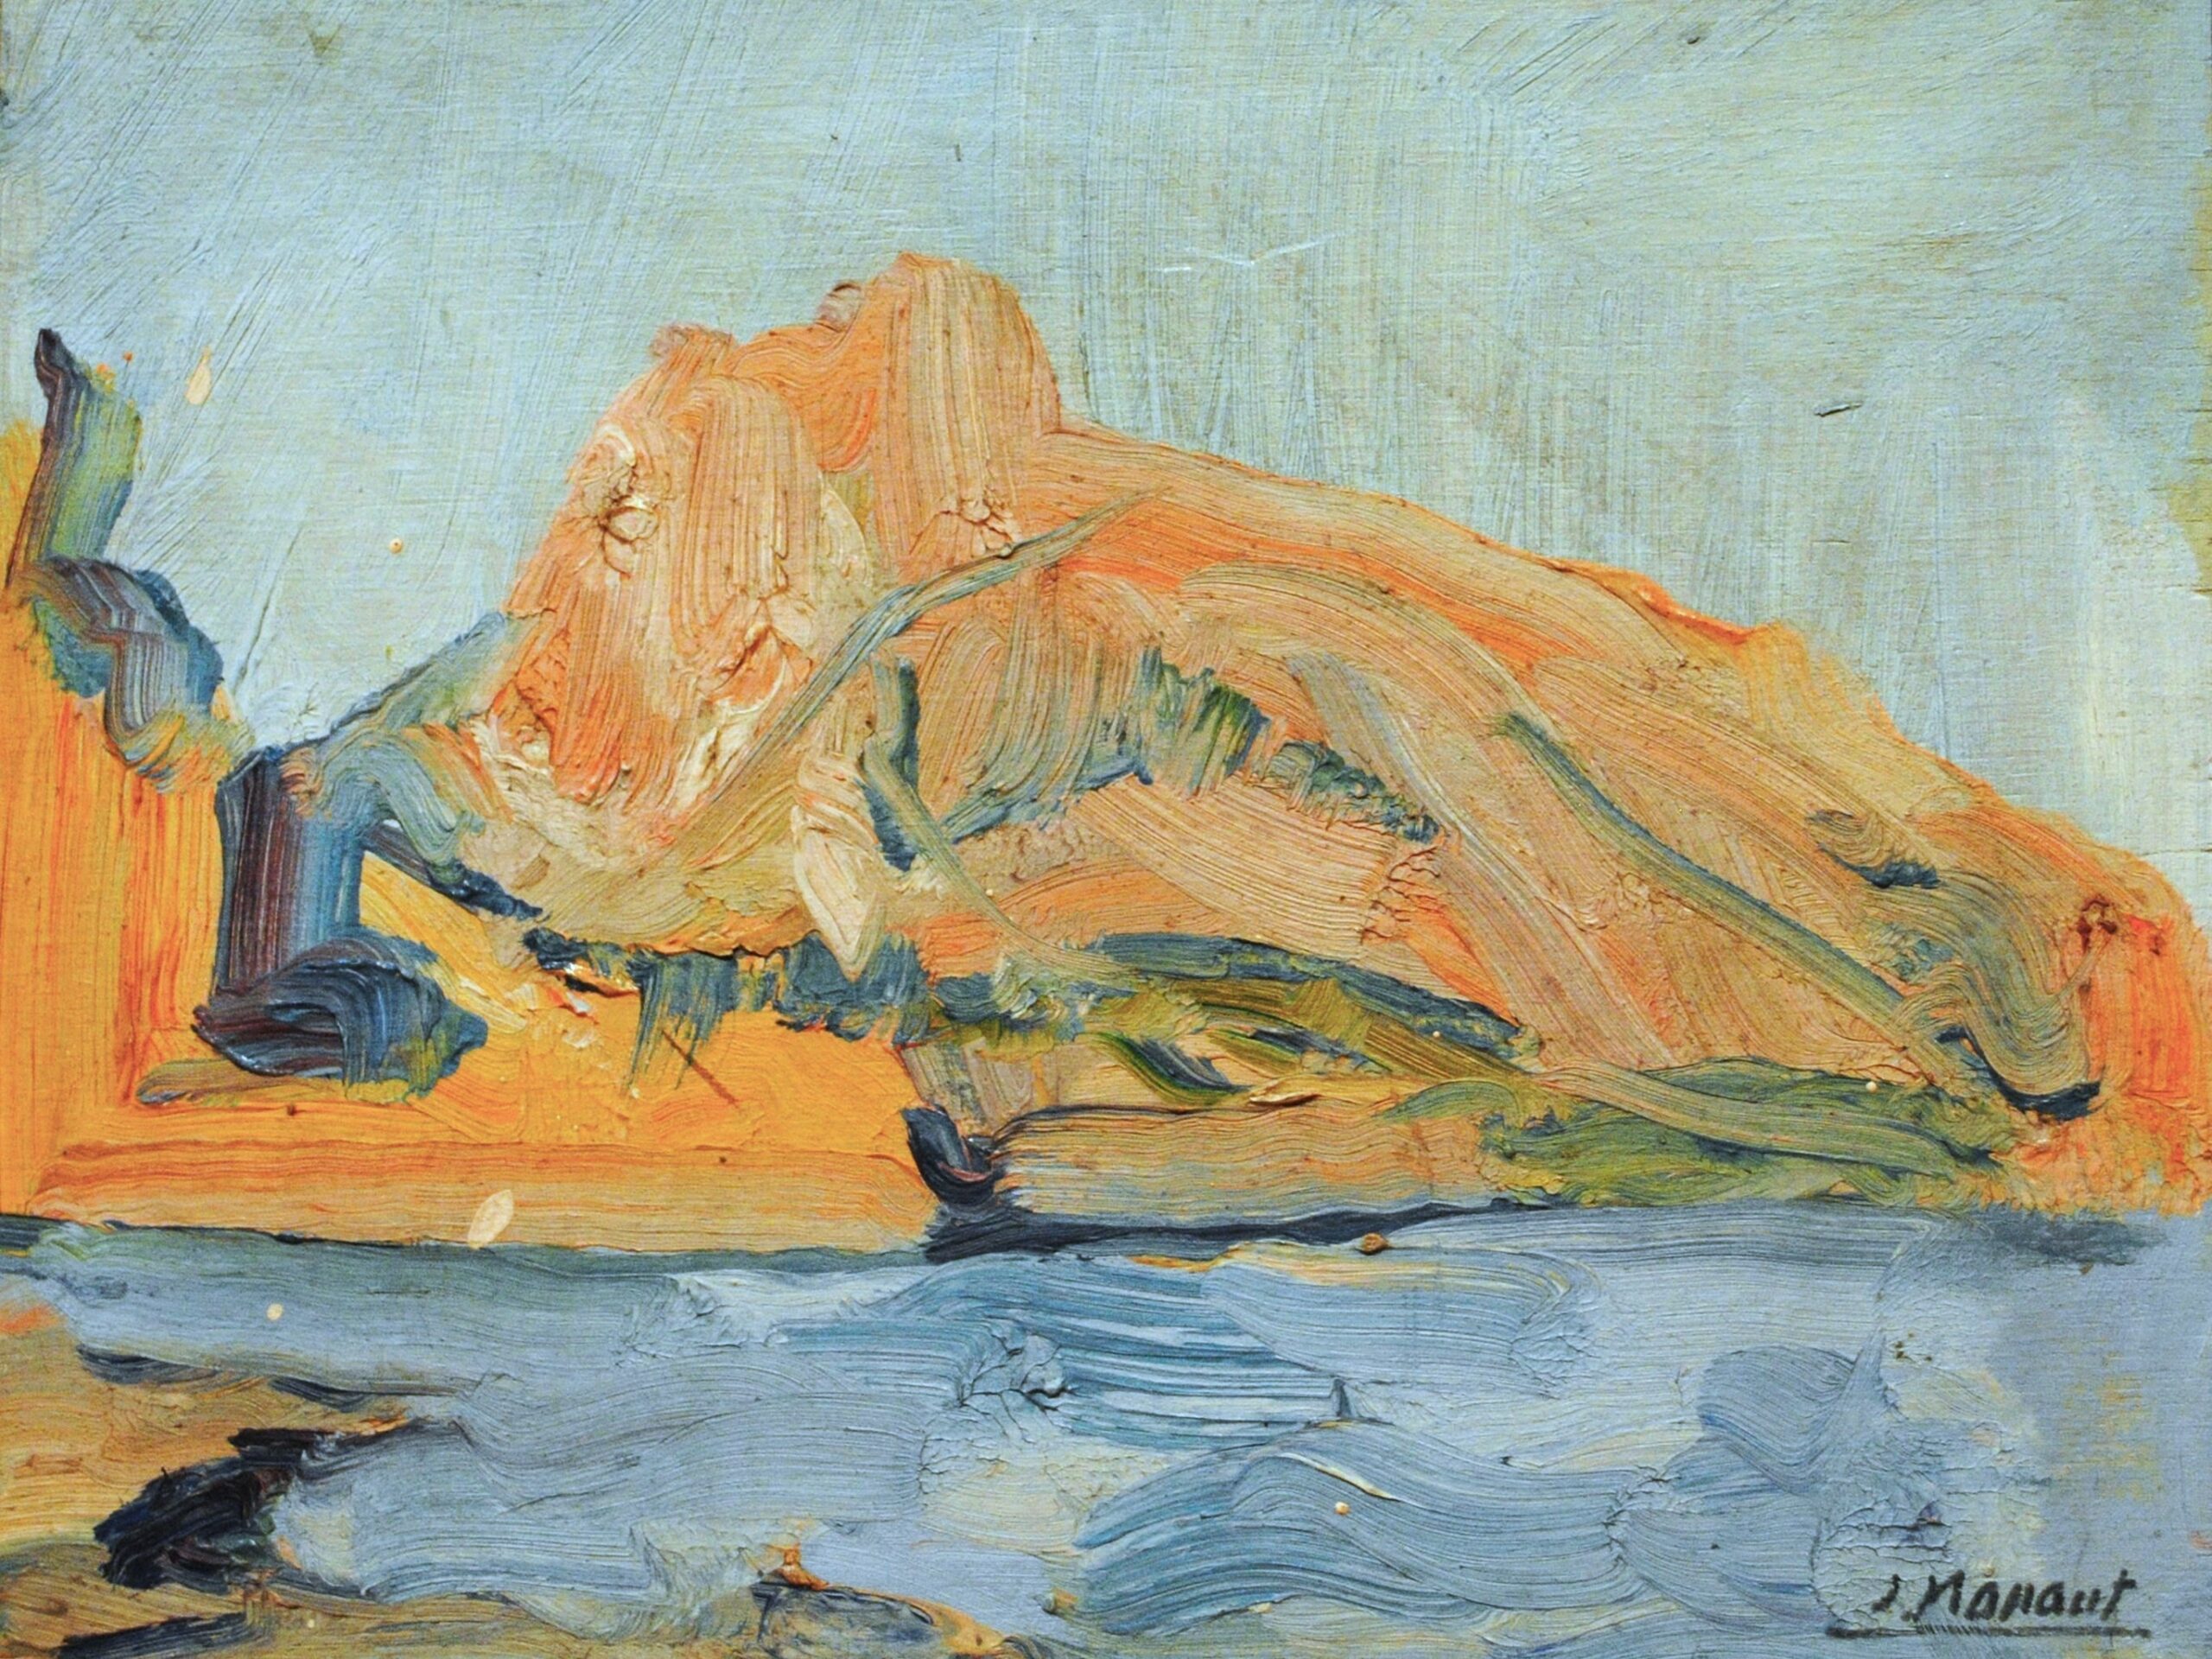 Pintura de José Manaut titulada Peñón de Ifach, Altea, 1965. Óleo sobre tabla.